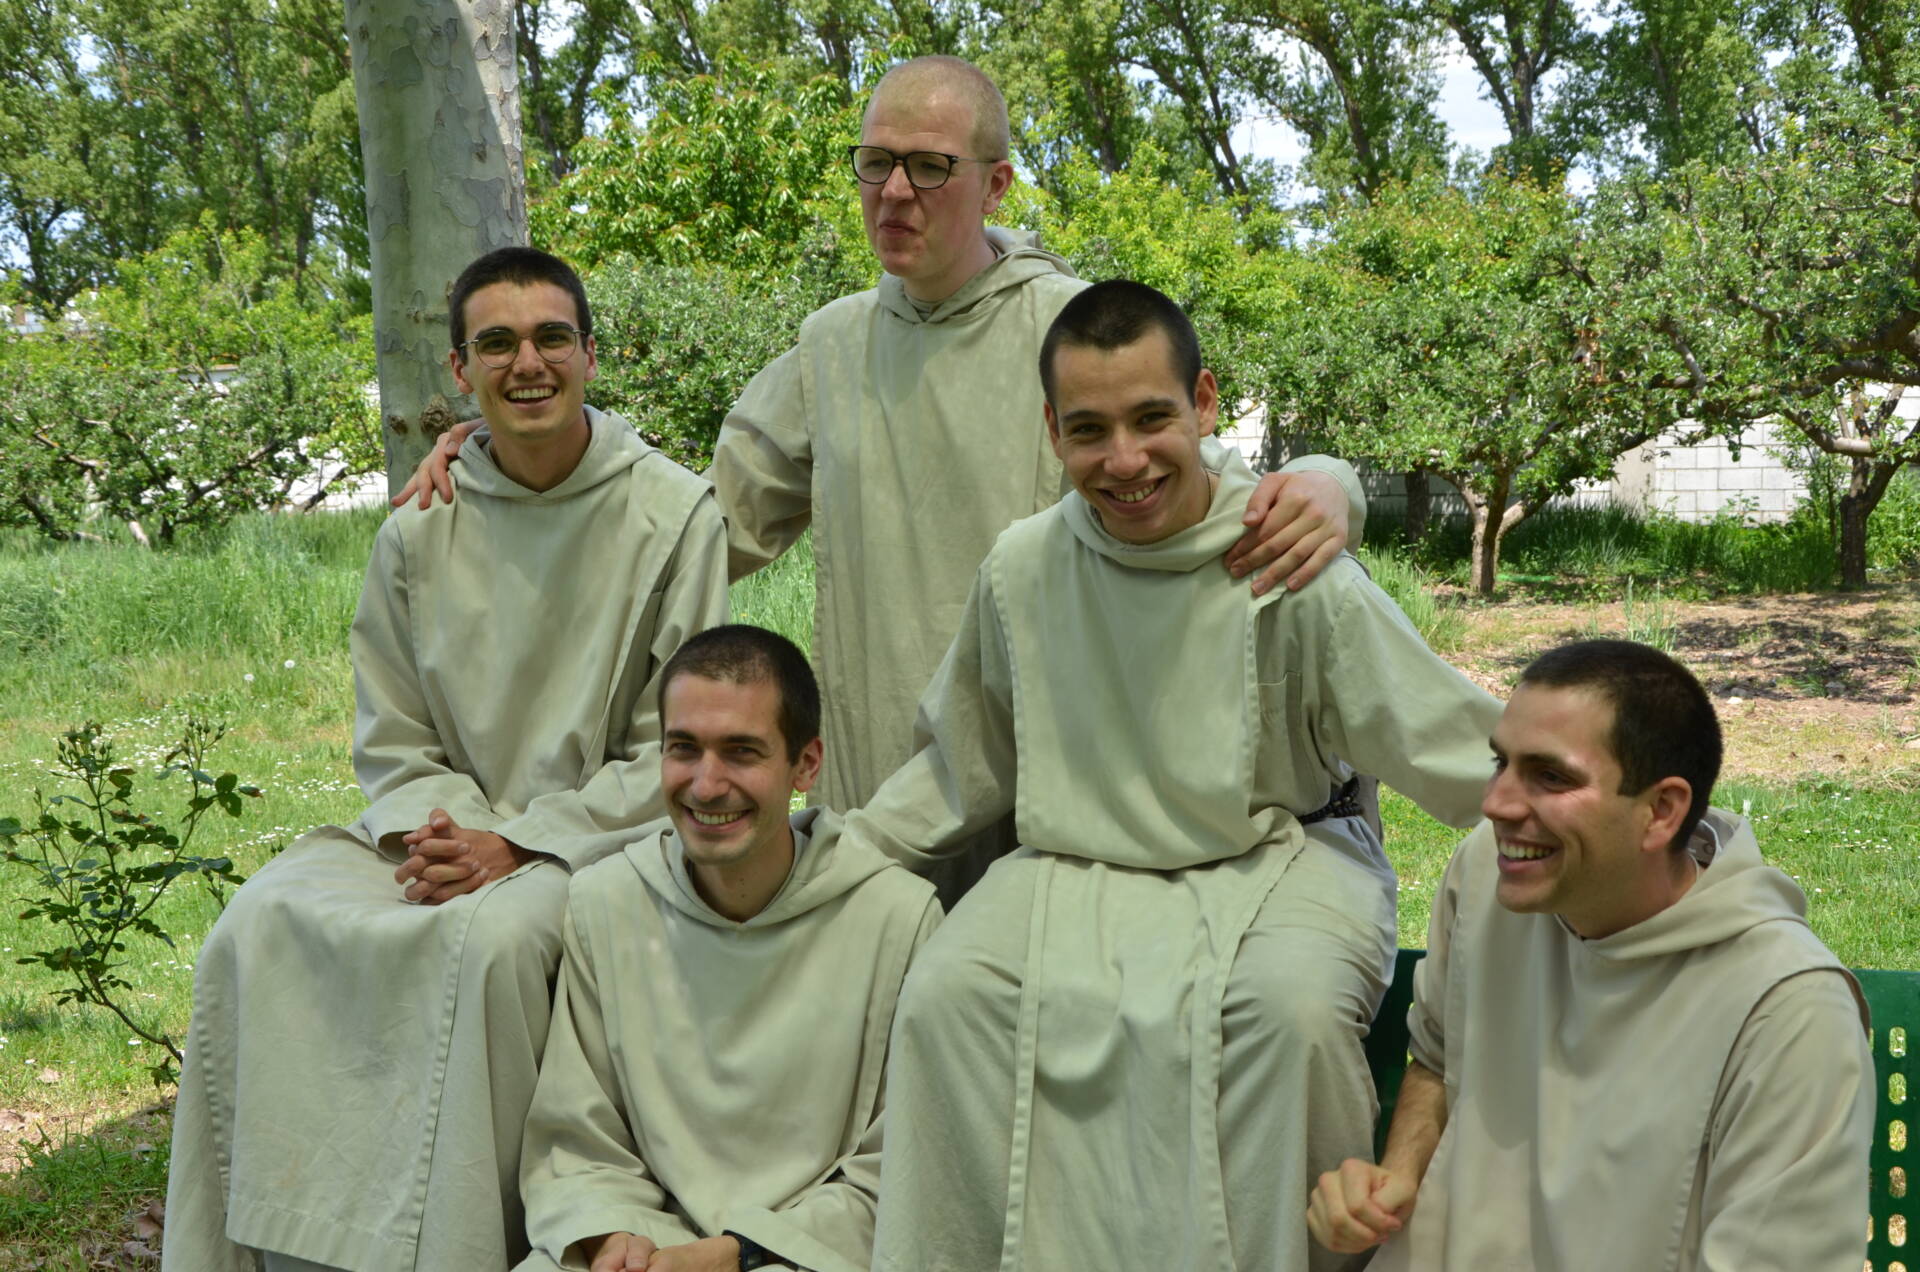 La Fraternidad Verbum Spei establece una casa de formación en el antiguo convento de las Calatravas, en el barrio de San Cristóbal, con una incipiente comunidad formada por 8 religiosos